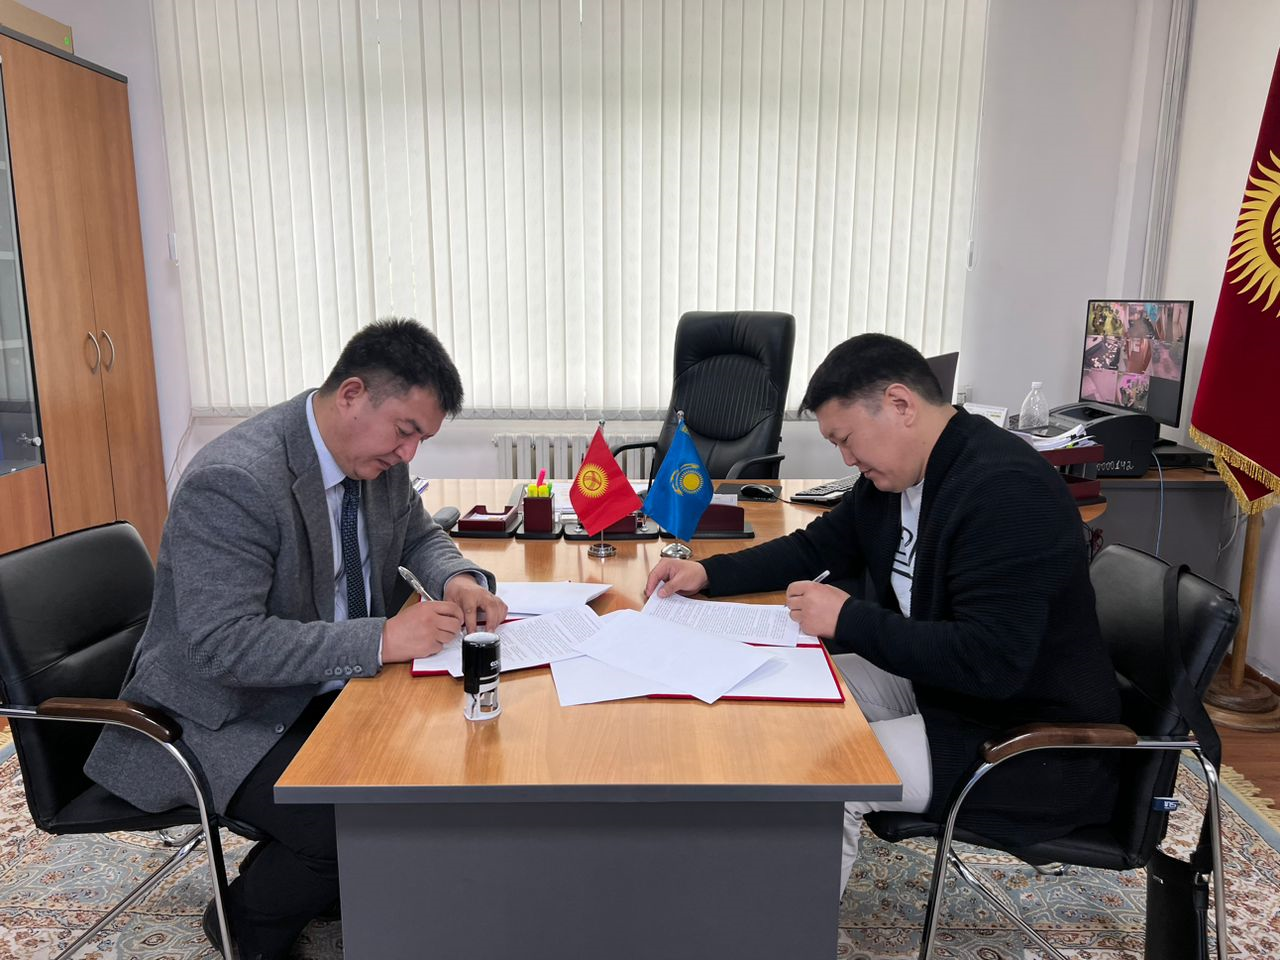 Центр трудоустройства граждан за рубежом при МТСОМ Кыргызской Республики и Группа компаний “Универсал” подписали Соглашение о сотрудничестве